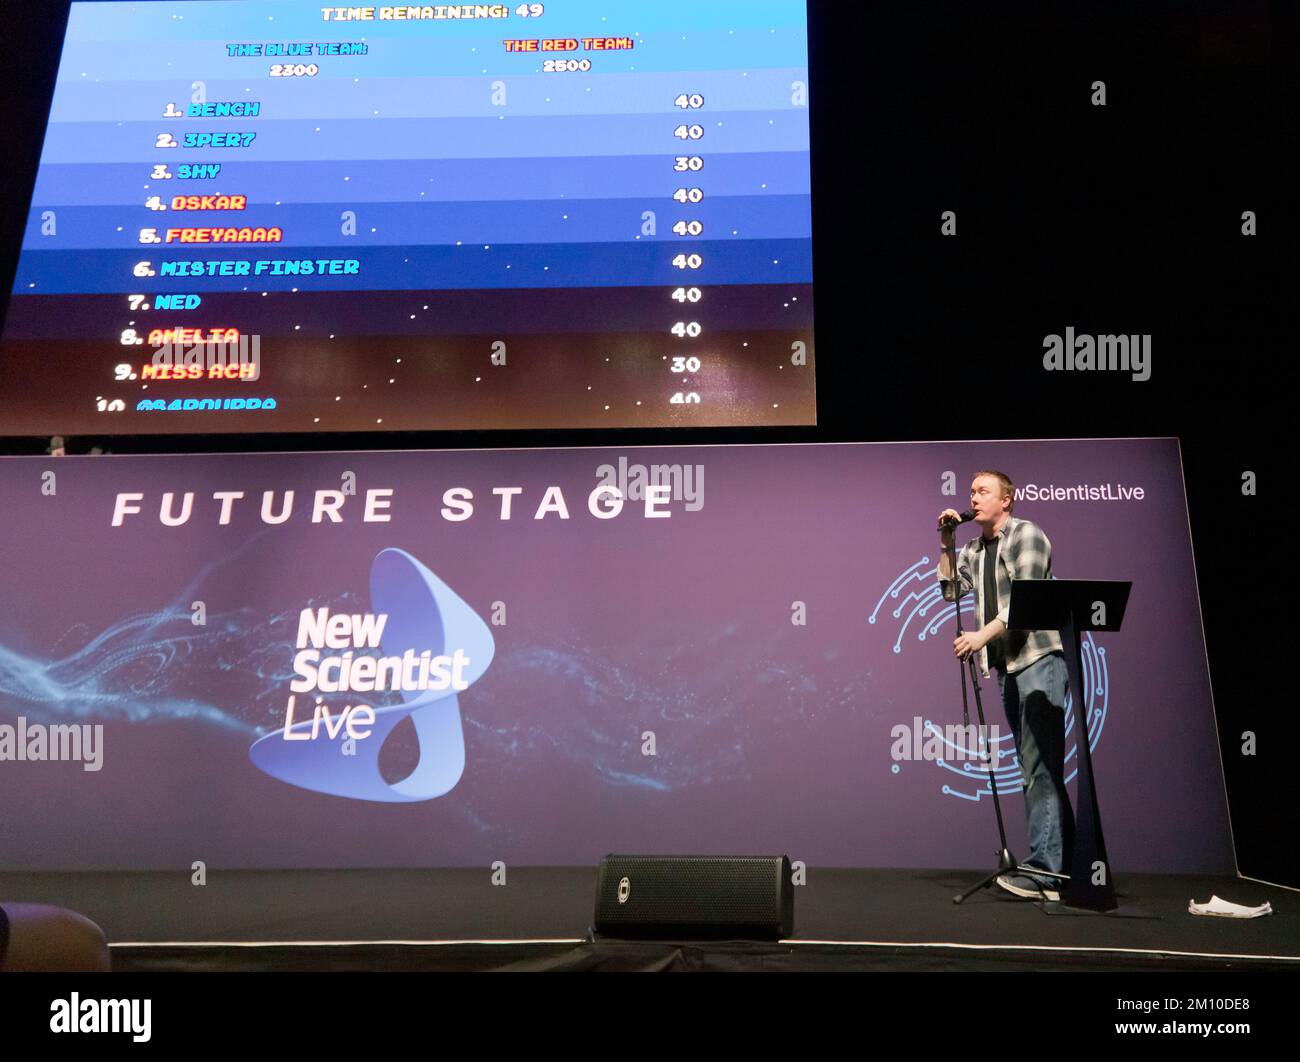 Steve McNeil, assisté de Rob Sedgebeer, fait une démonstration en direct de l'évolution des jeux vidéo, avec le public participant, via leur smartphone, sur la scène future, à New Scientist Live 2022 Banque D'Images